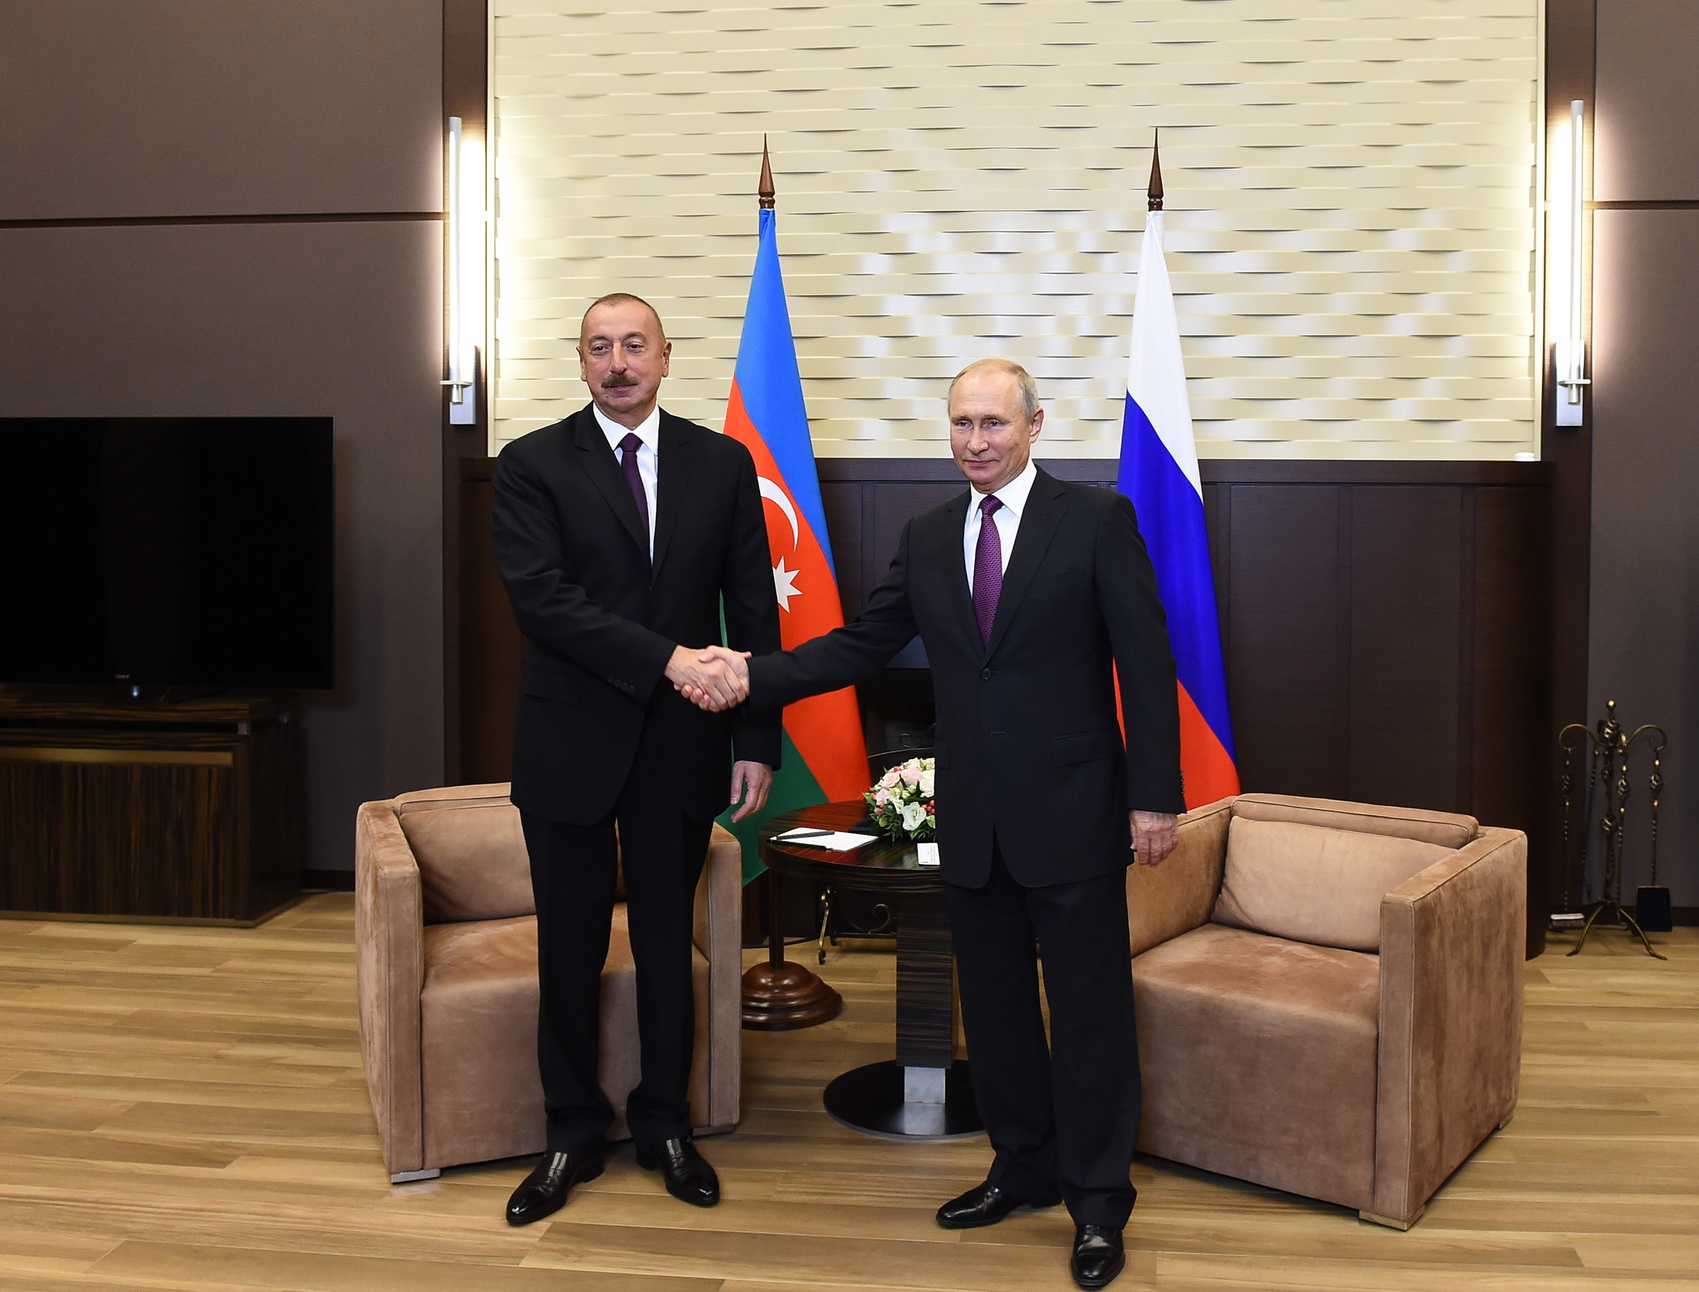 Состоялся телефонный разговор между Ильхамом Алиевым и Владимиром Путиным